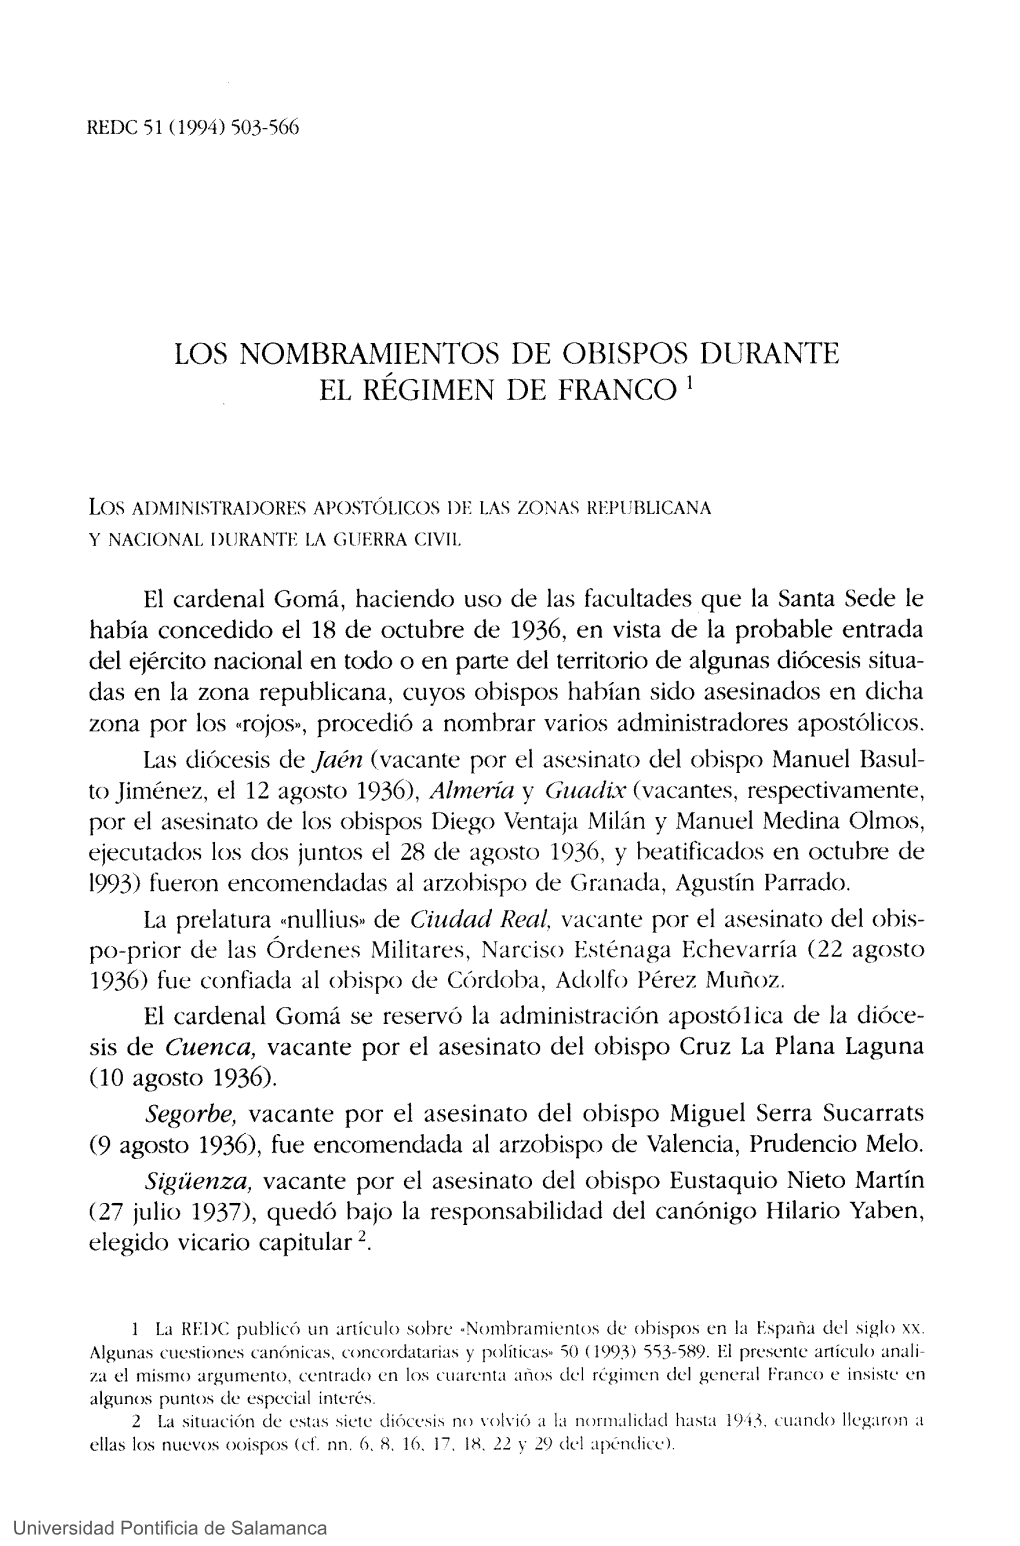 Los Nombramientos De Obispos Durante El Régimen De Franco